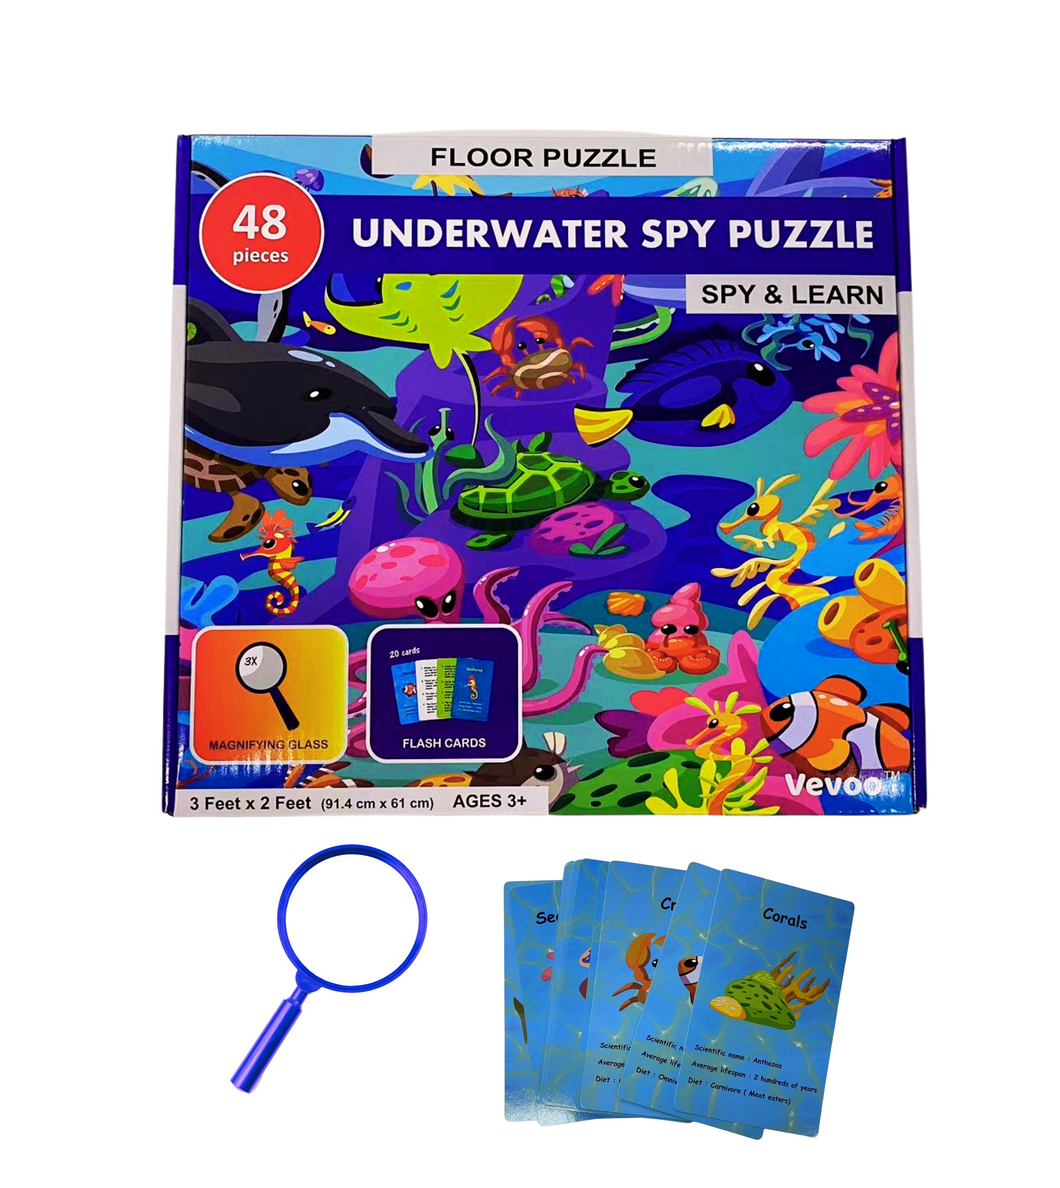 Underwater Spy Puzzle